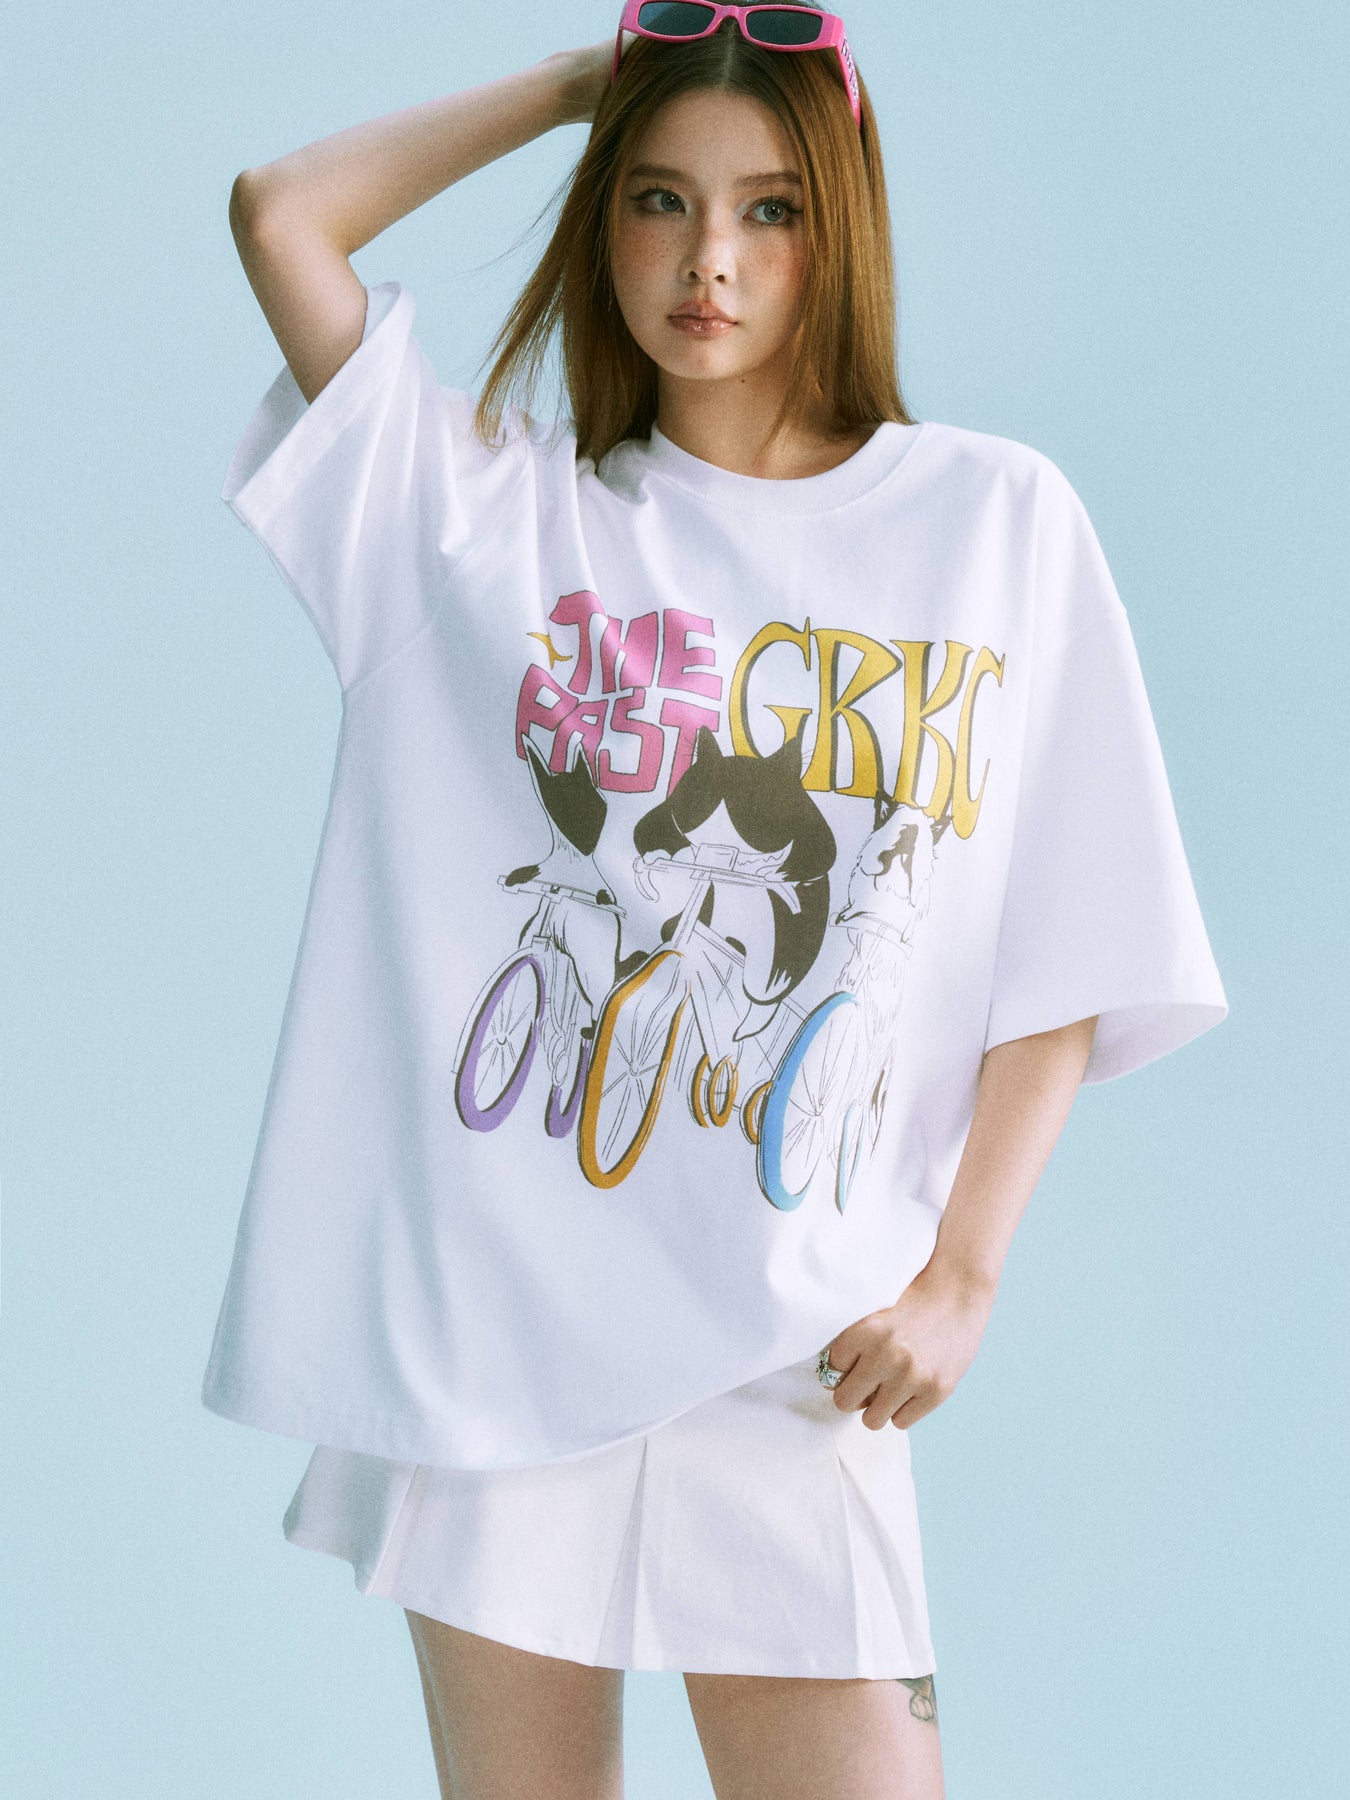 Office Cat T-Shirt – GRKC PRAY®